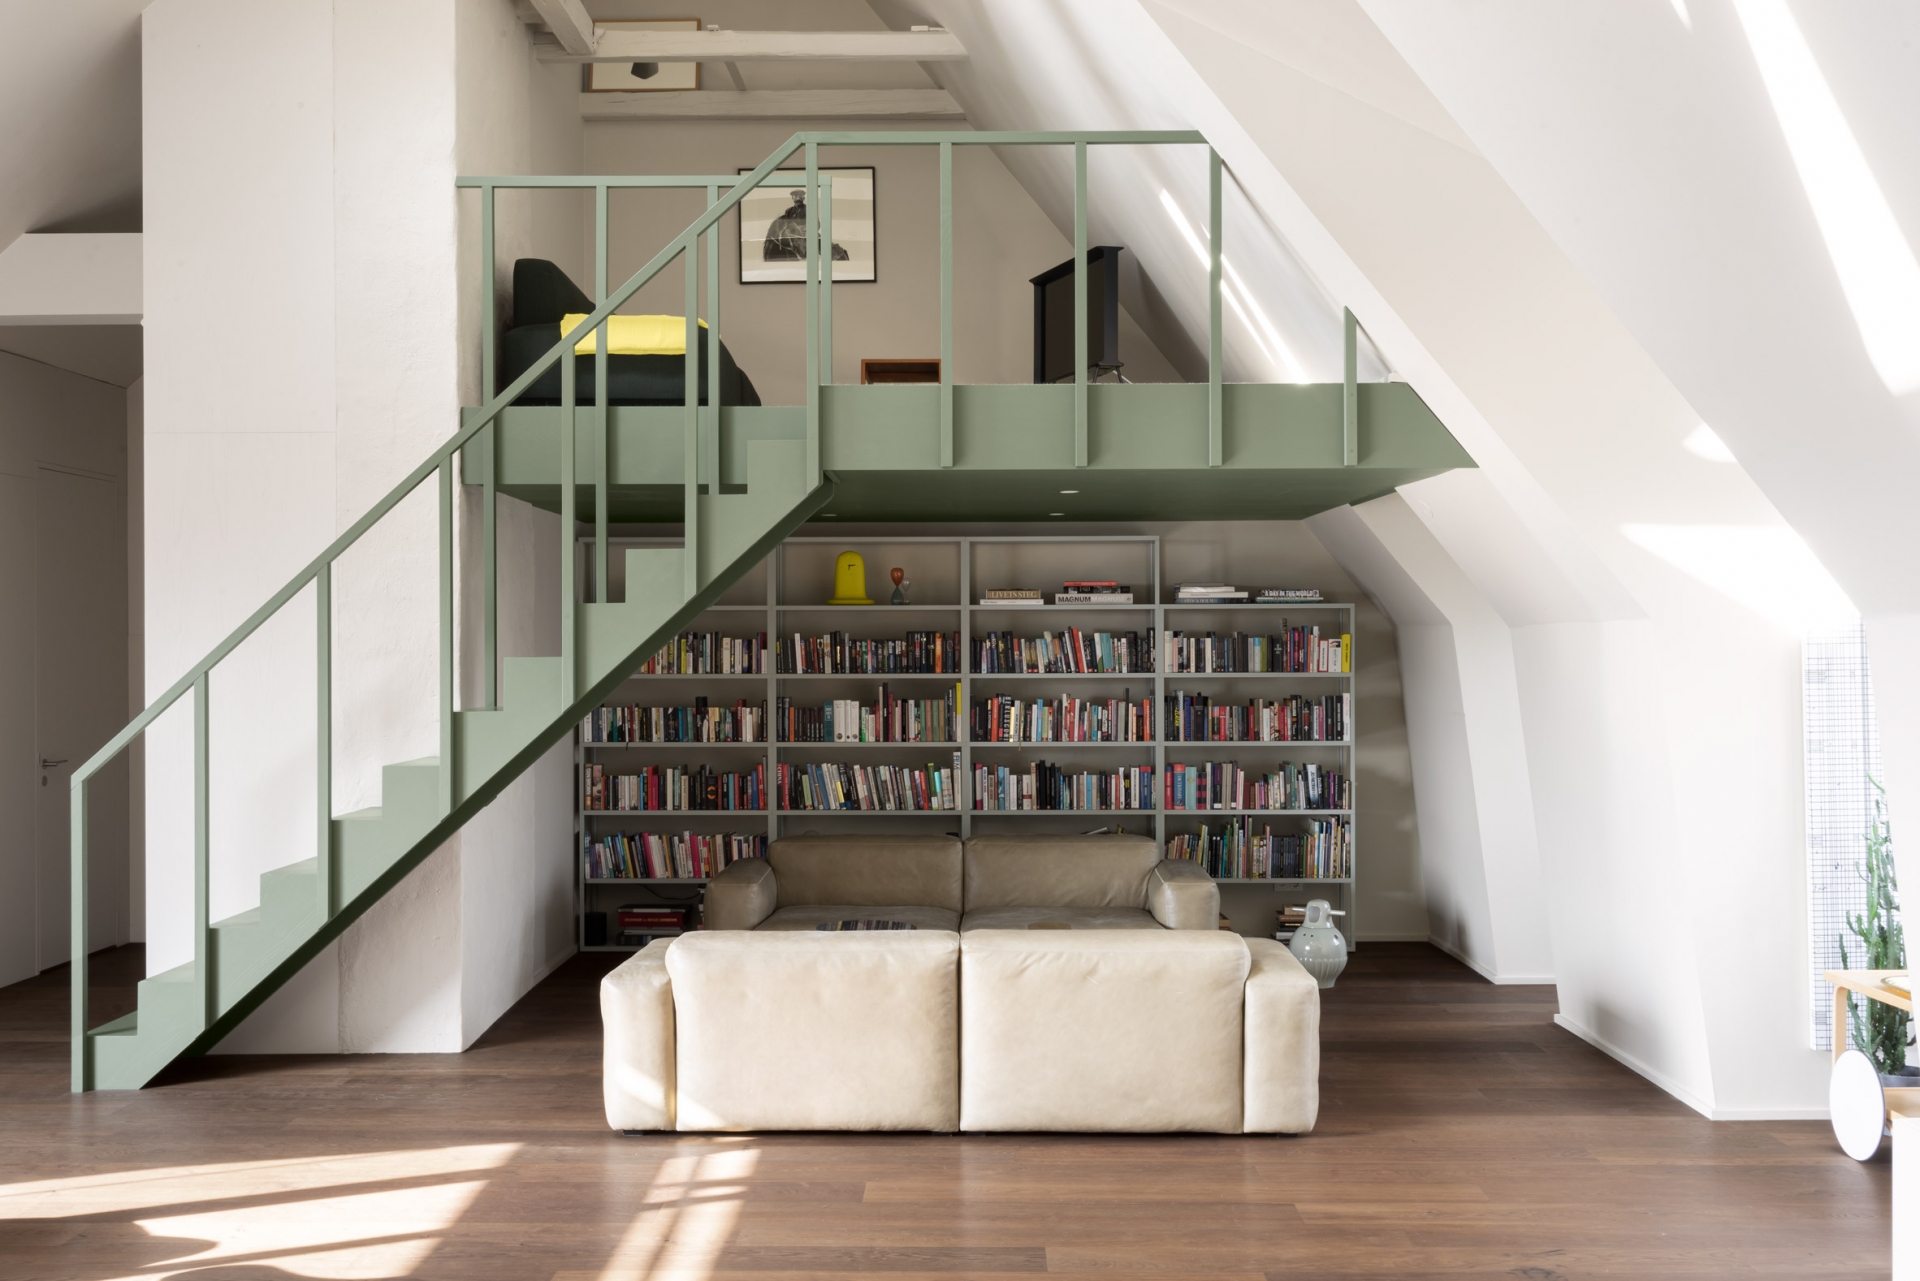 Phòng khách trang trọng với 2 chiếc ghế sofa cỡ lớn bọc da màu trắng kem đặt đối diện nhau. Phía sau là một giá sách cao làm thành một “thư viện mini” trong nhà nhỏ.